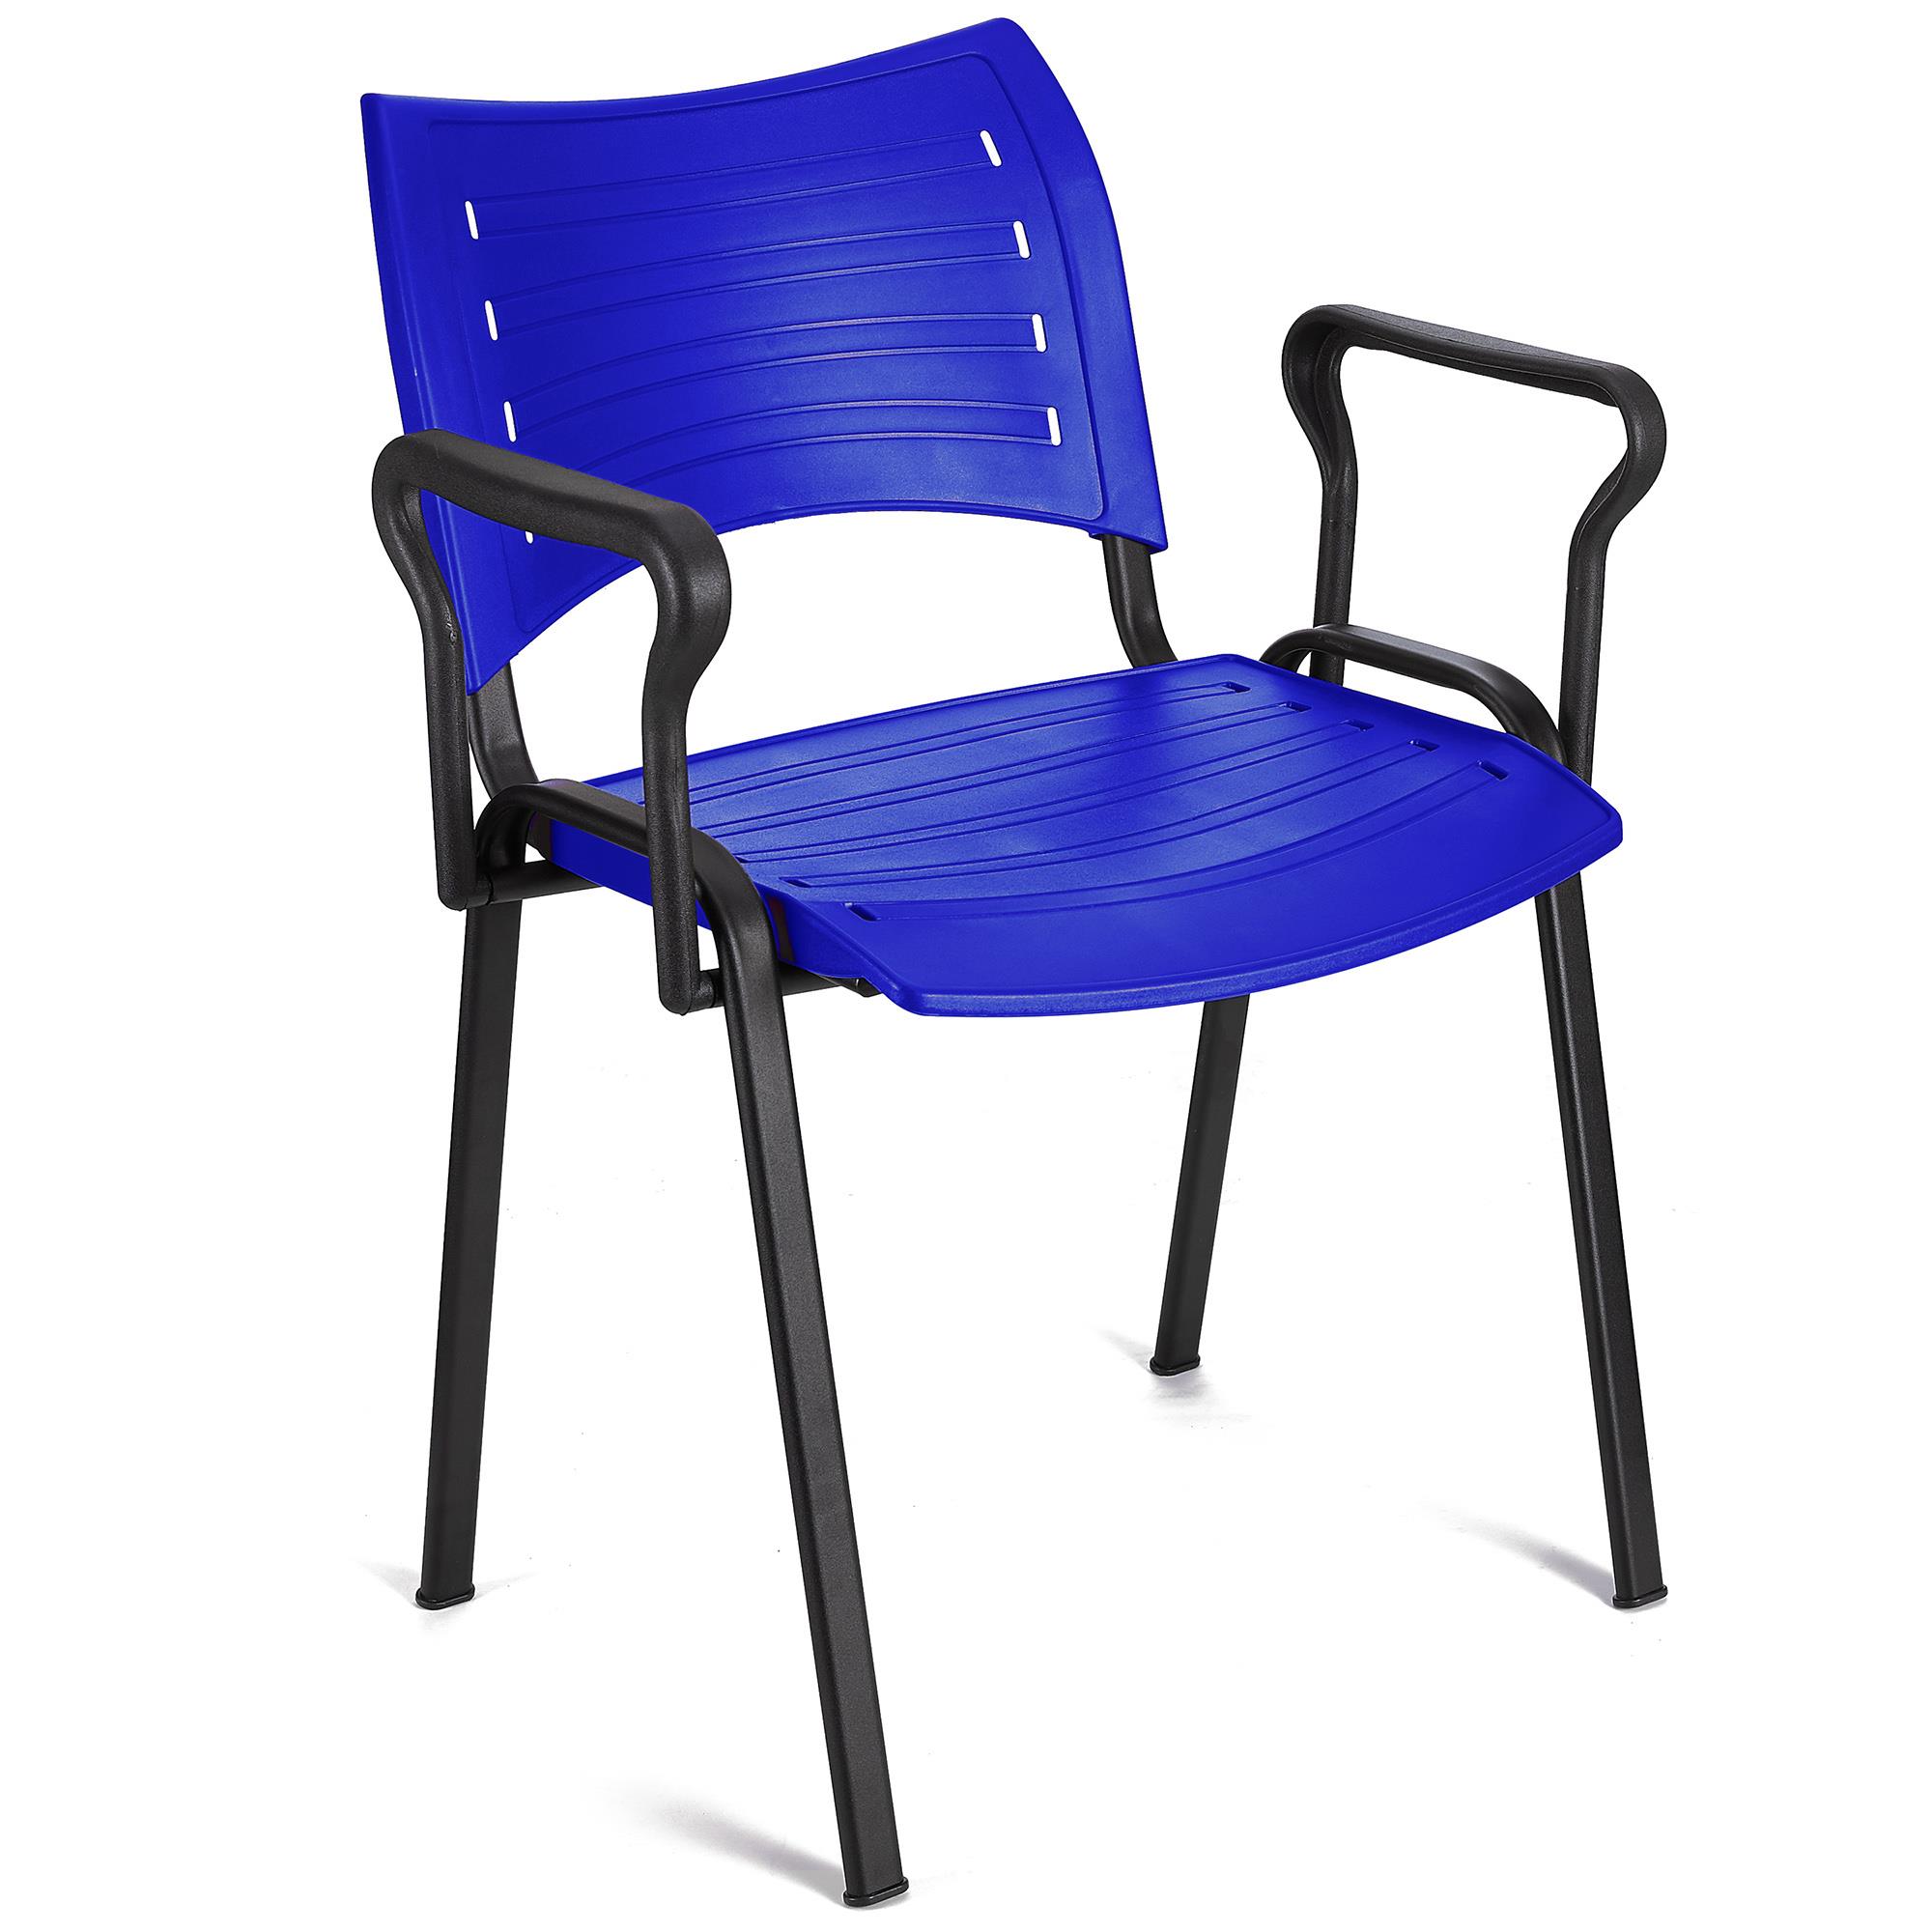 Cadeira de Visita ELVA COM BRAÇOS, Confortável, Pernas Pretas, Cor Azul